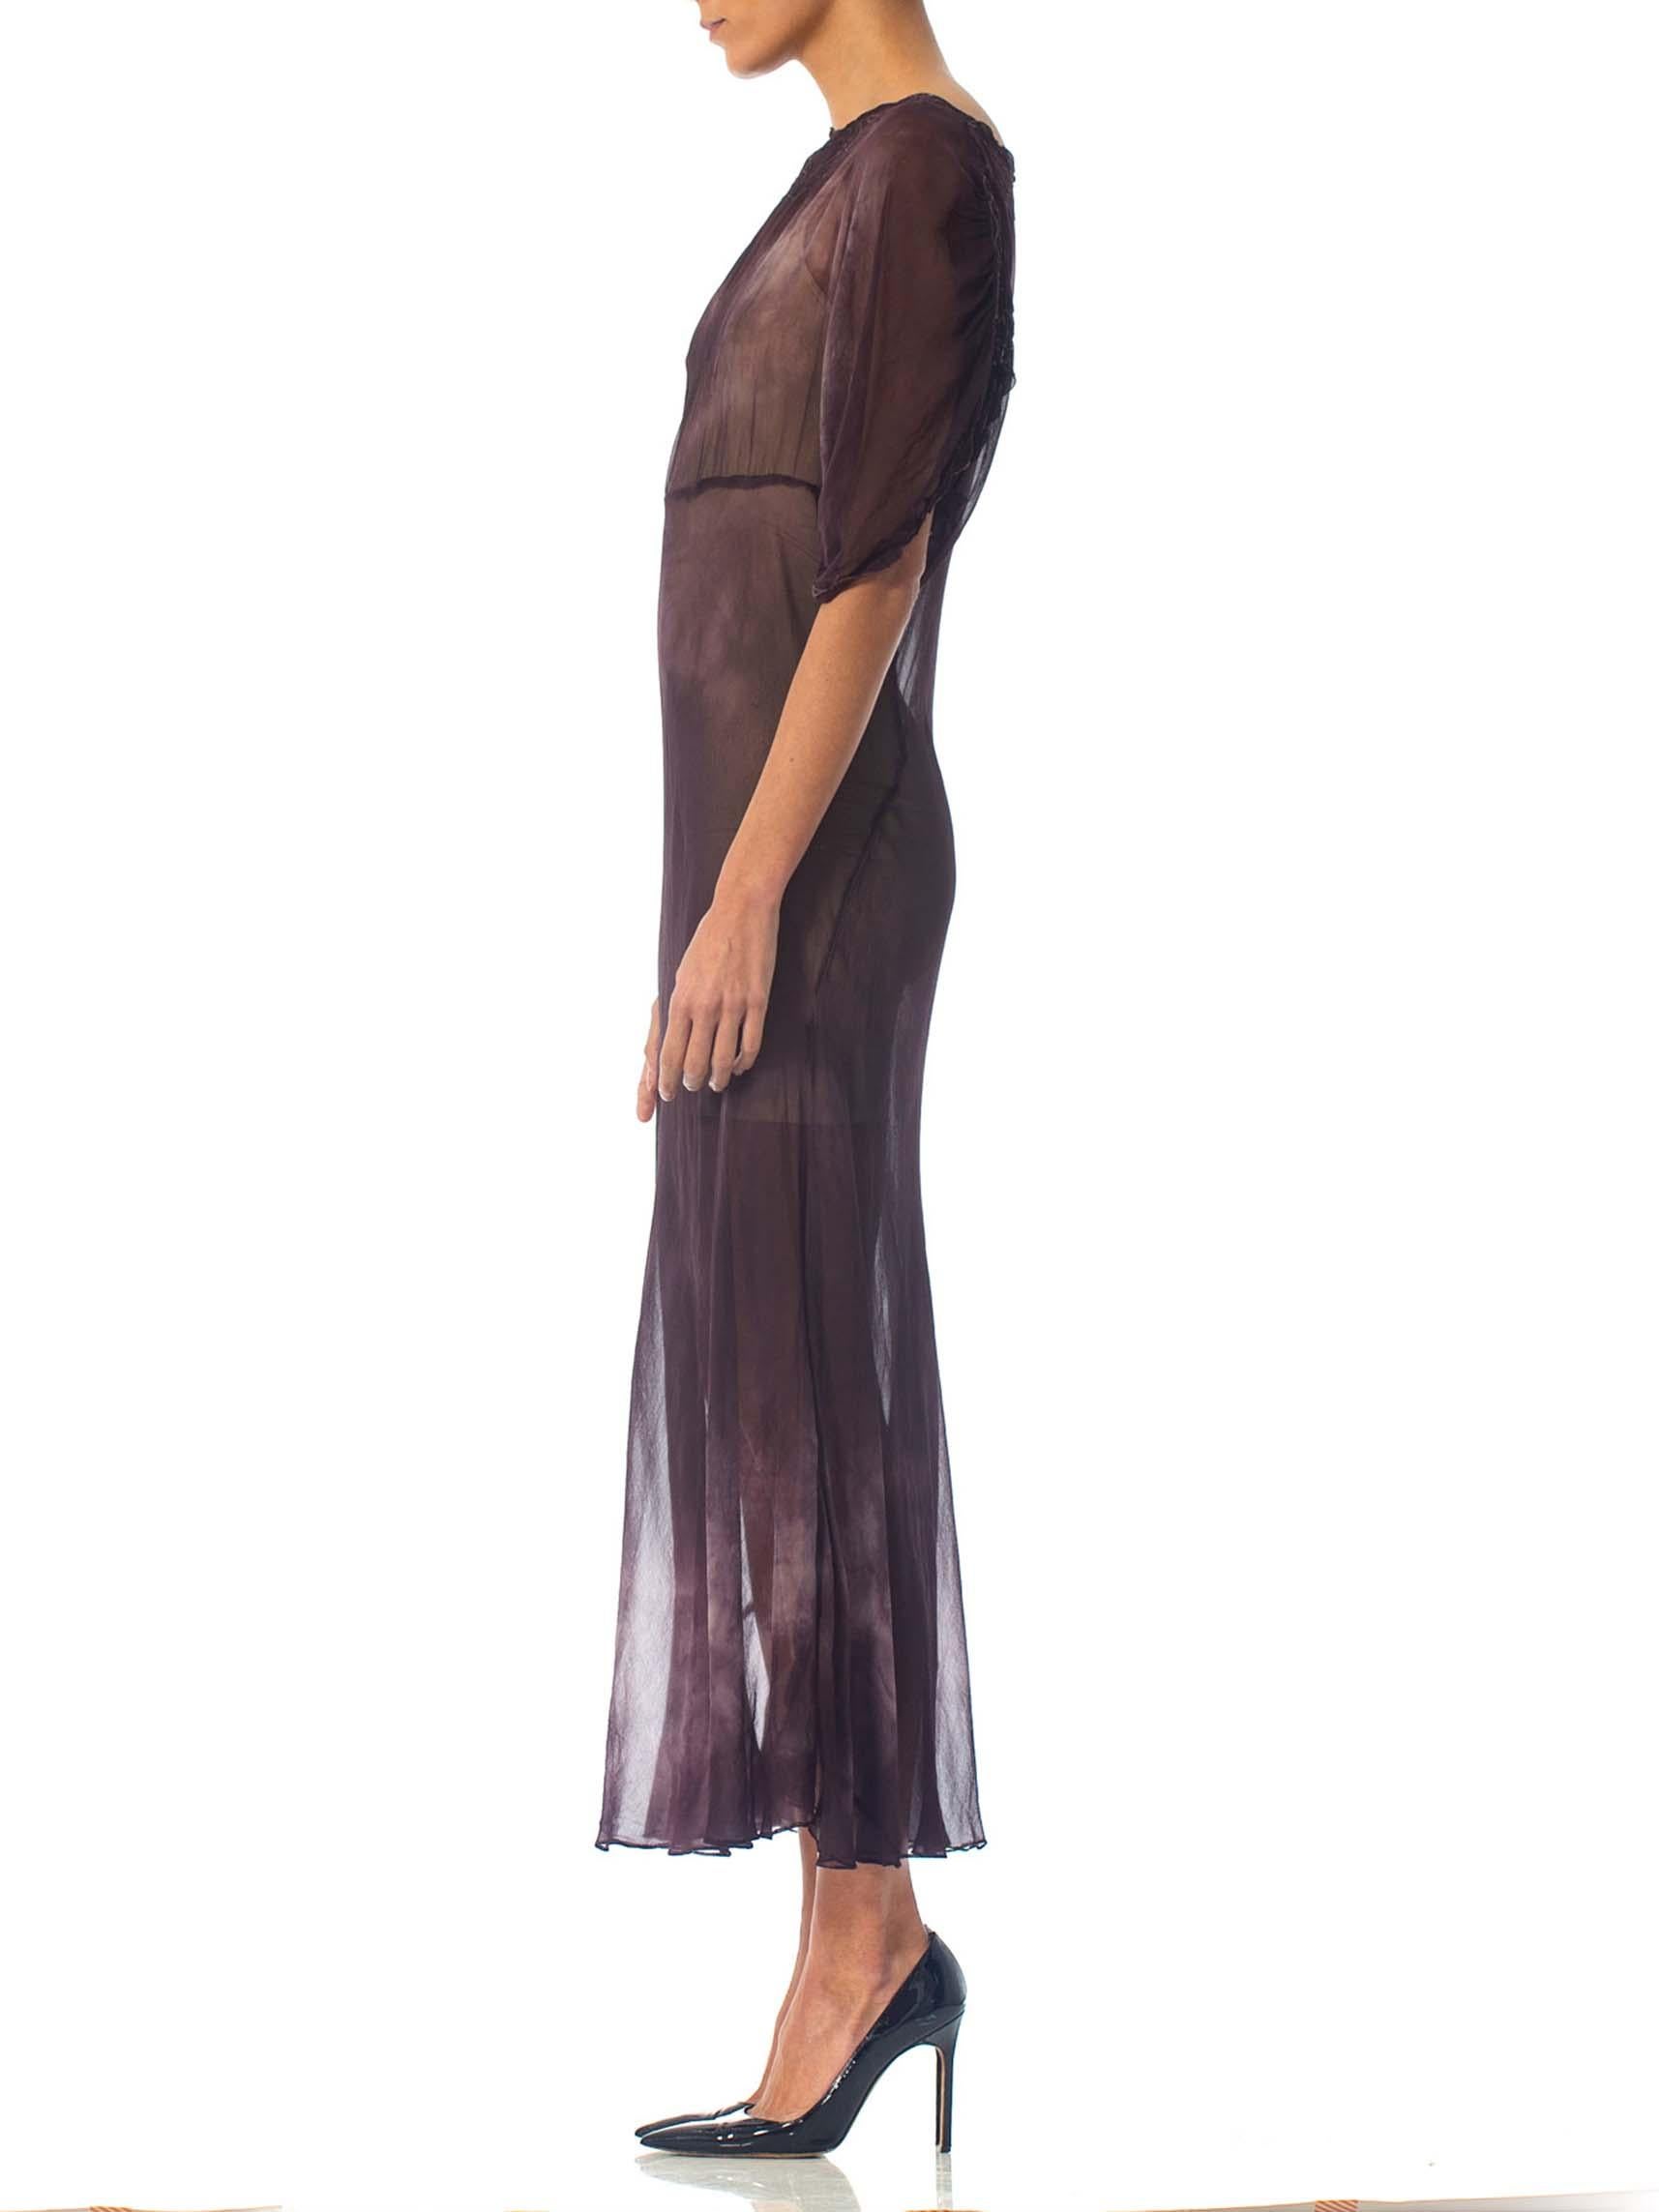 1930 Bias Cut Silk Chiffon Stormy Sky Tie-Dye Sleeved Dress With Appliqué Neckline